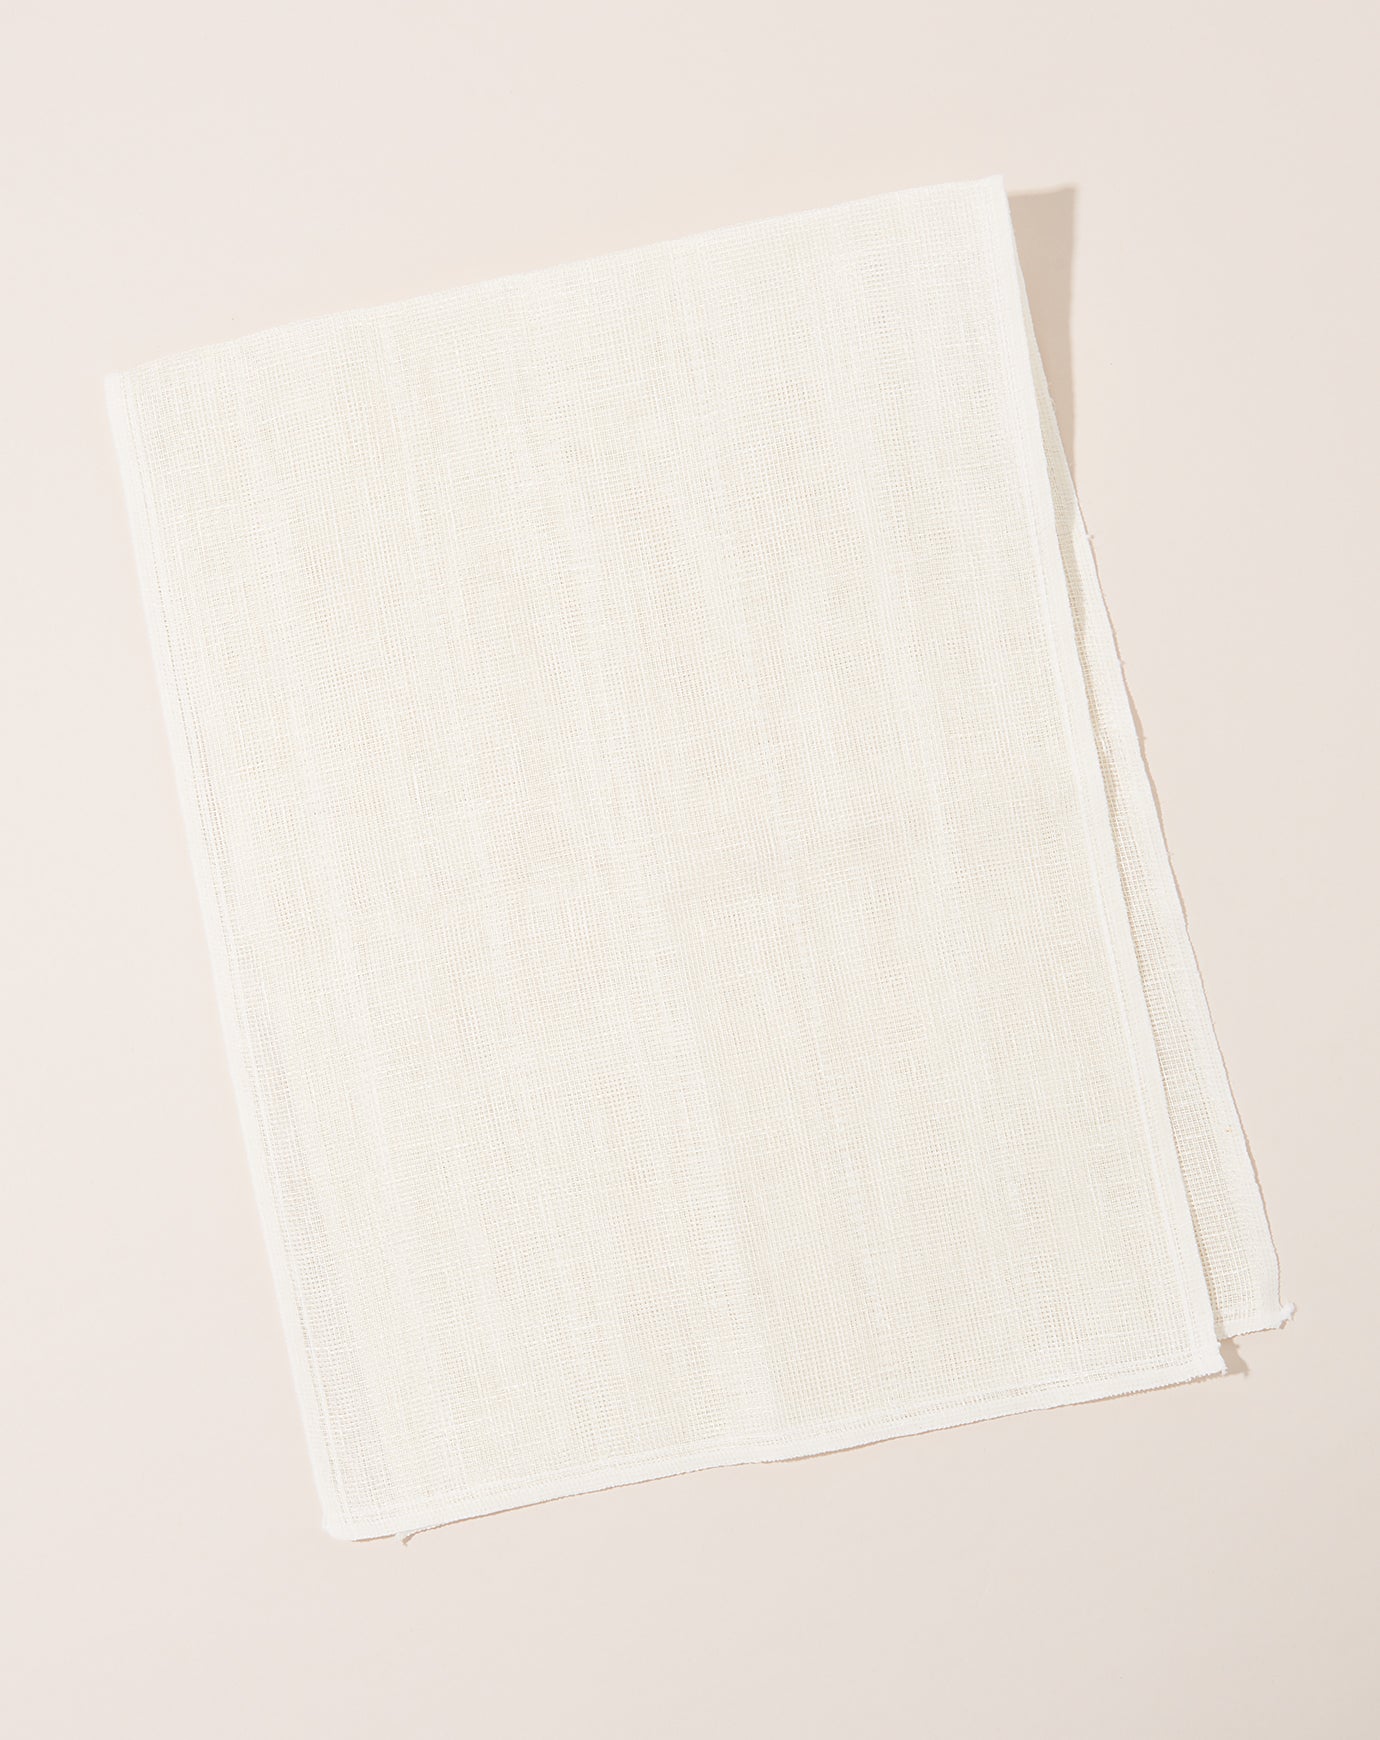 Saikai Okai Body Scrub Towel in White